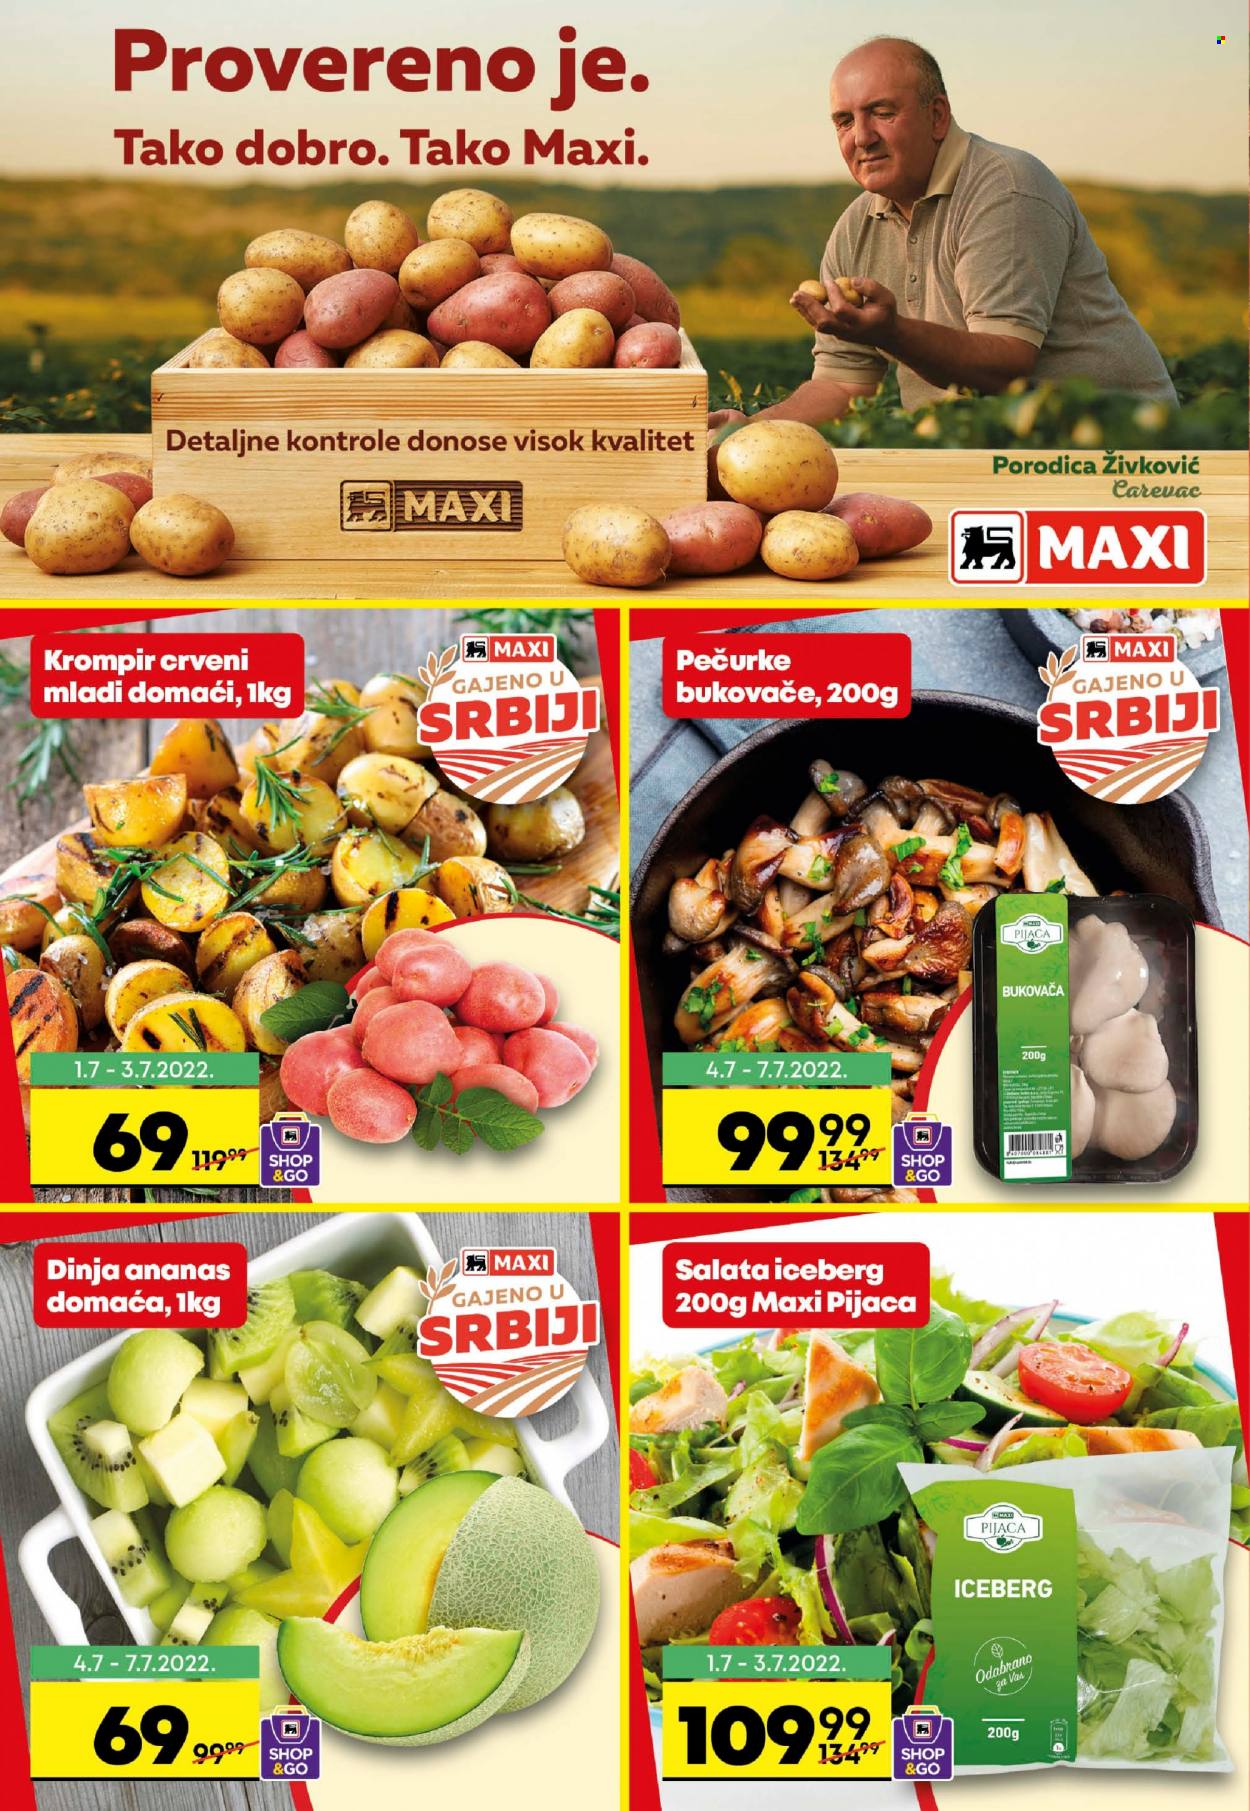 thumbnail - Maxi katalog - 30.06.2022 - 06.07.2022 - Proizvodi na akciji - krompir, salata, ananas, dinja, bukovača, pečurki, Dobro. Stranica 2.